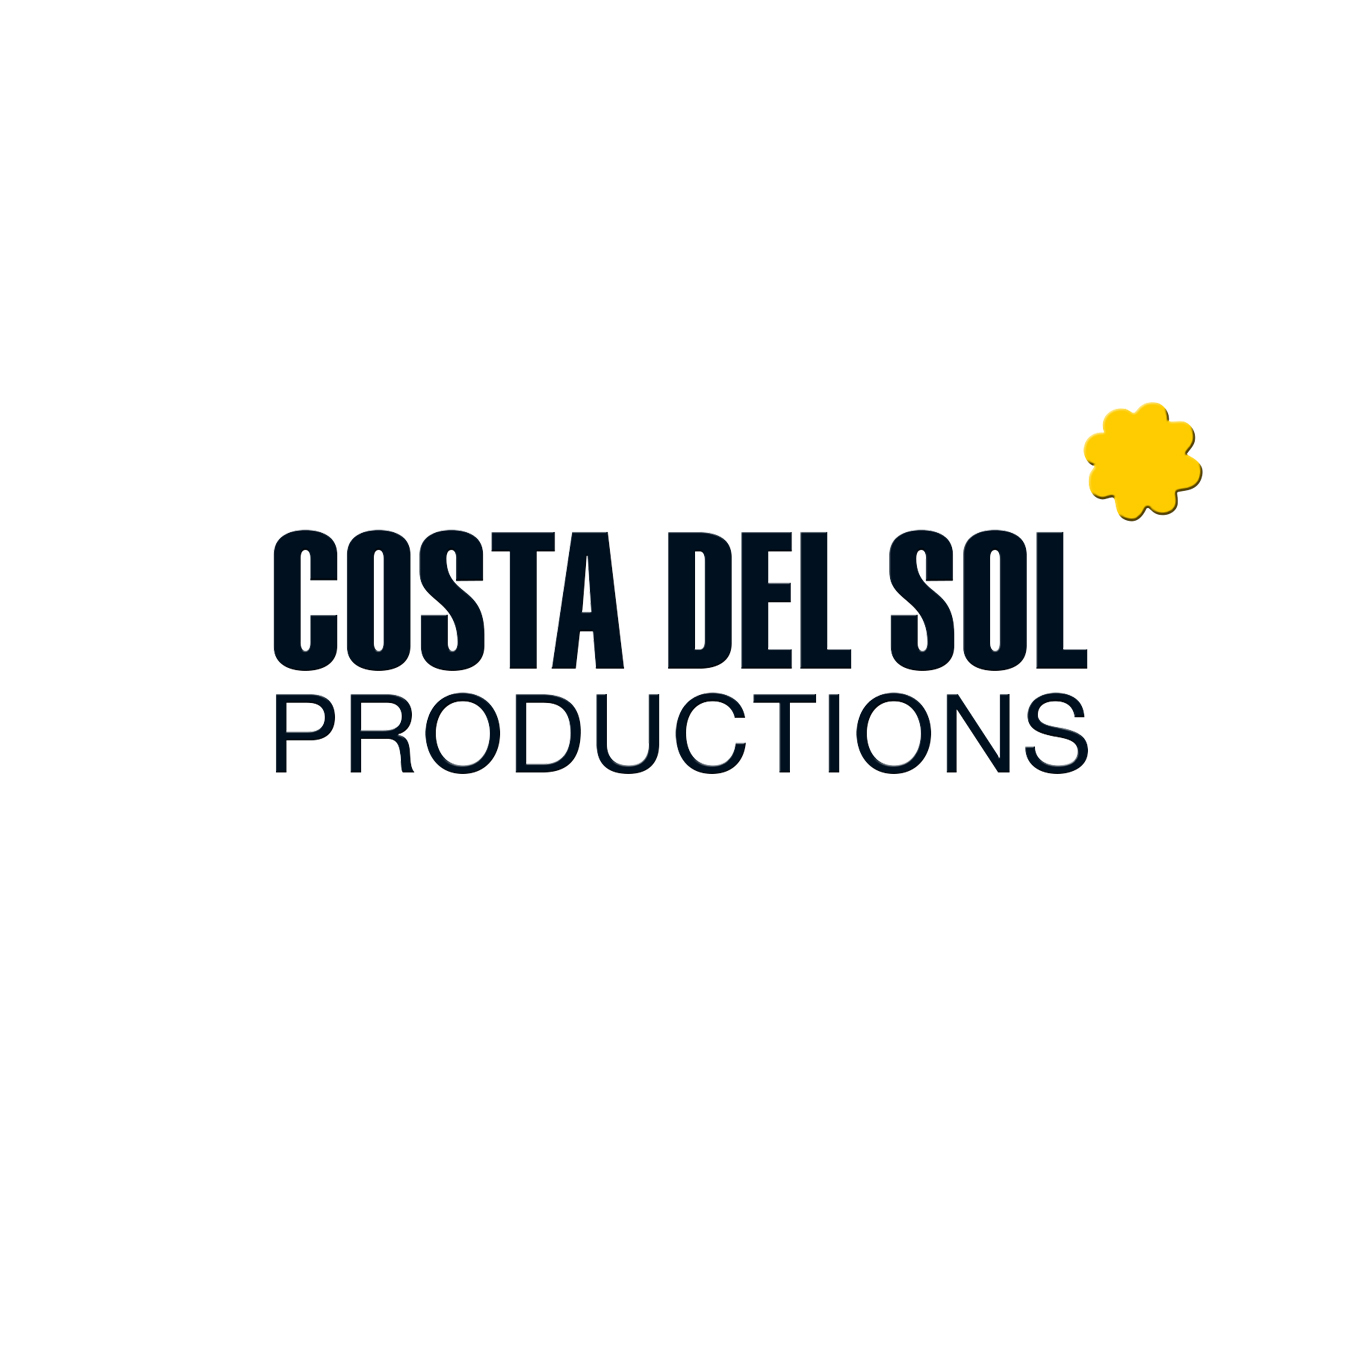 COSTA DEL SOL productions - Granada - Malaga - Almeria